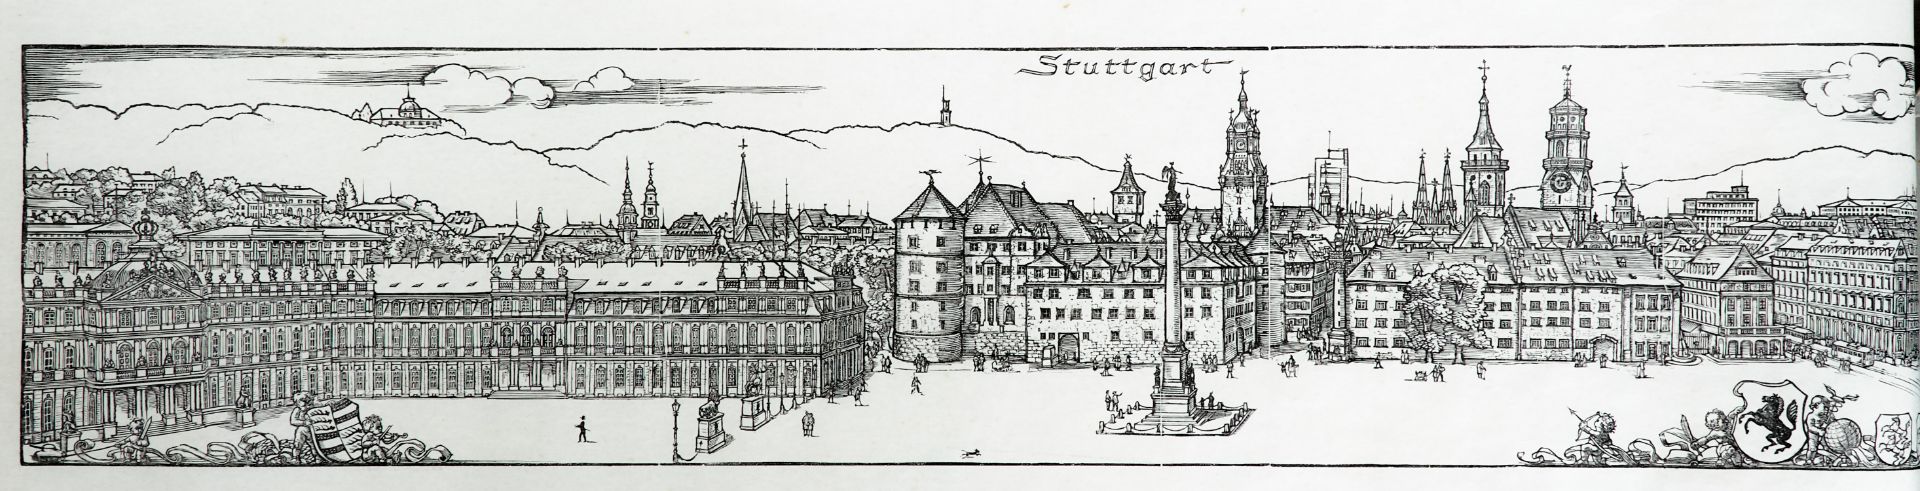 Stuttgart - "Stuttgart". Holzschnitt auf Pergaminpapier von E. Feyerabend, dat. 1945. 27,5 x 147 cm. - Image 2 of 5